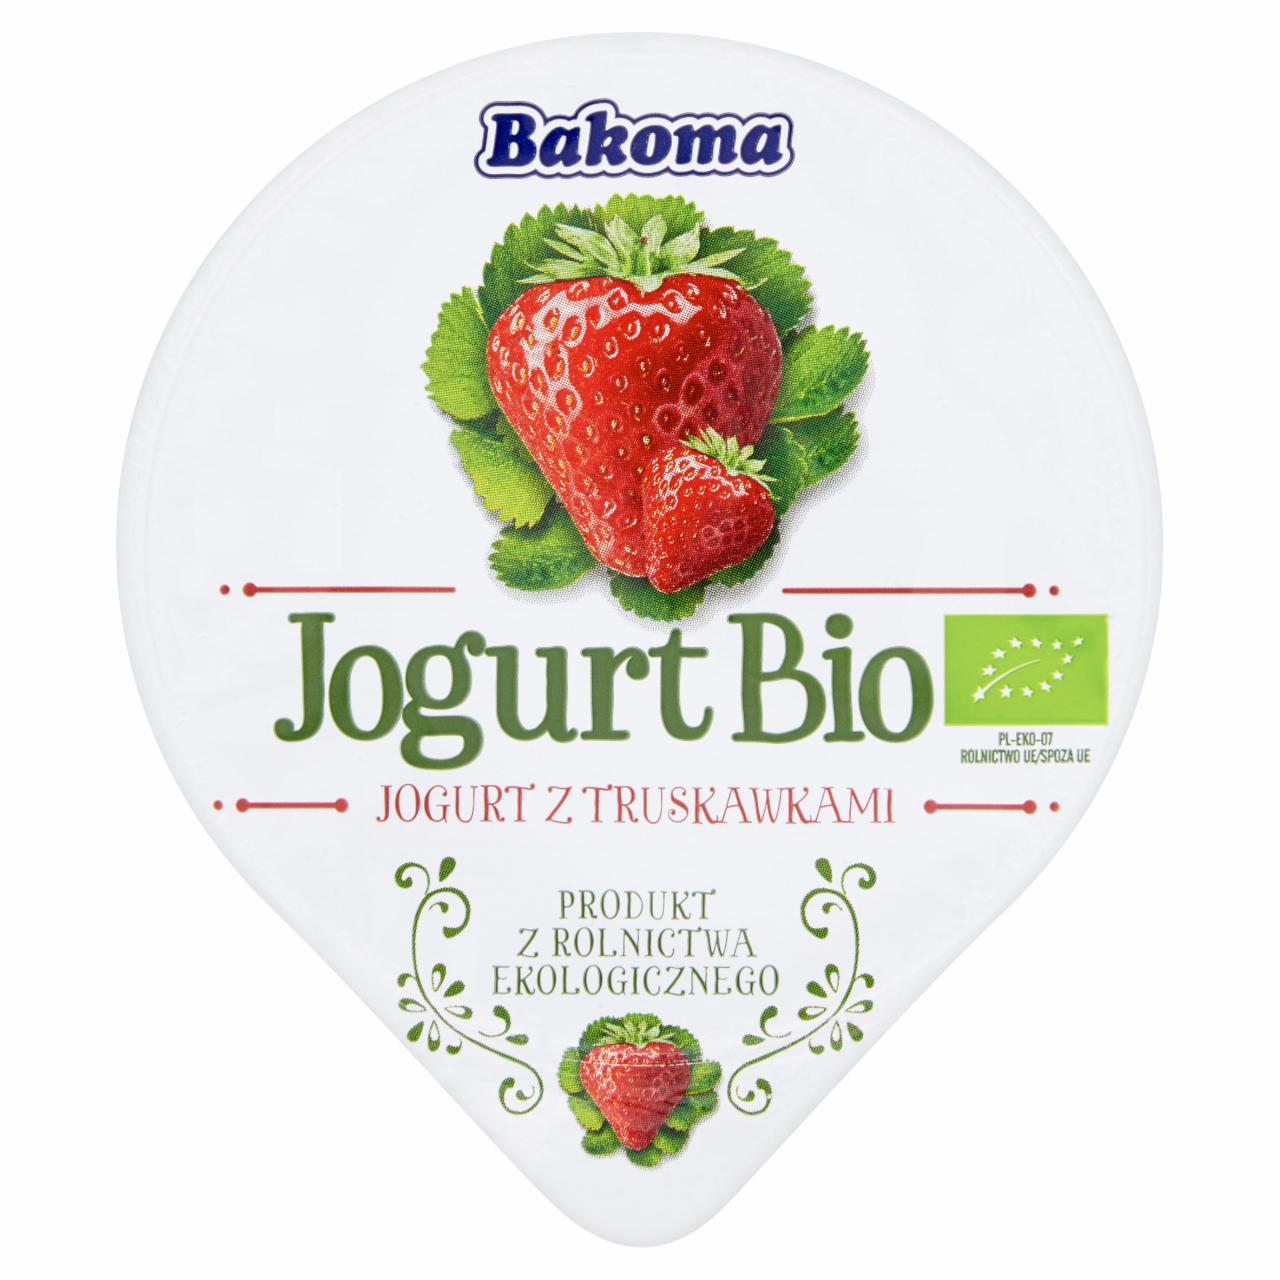 Zdjęcia - Jogurt Bio z truskawkami Bakoma